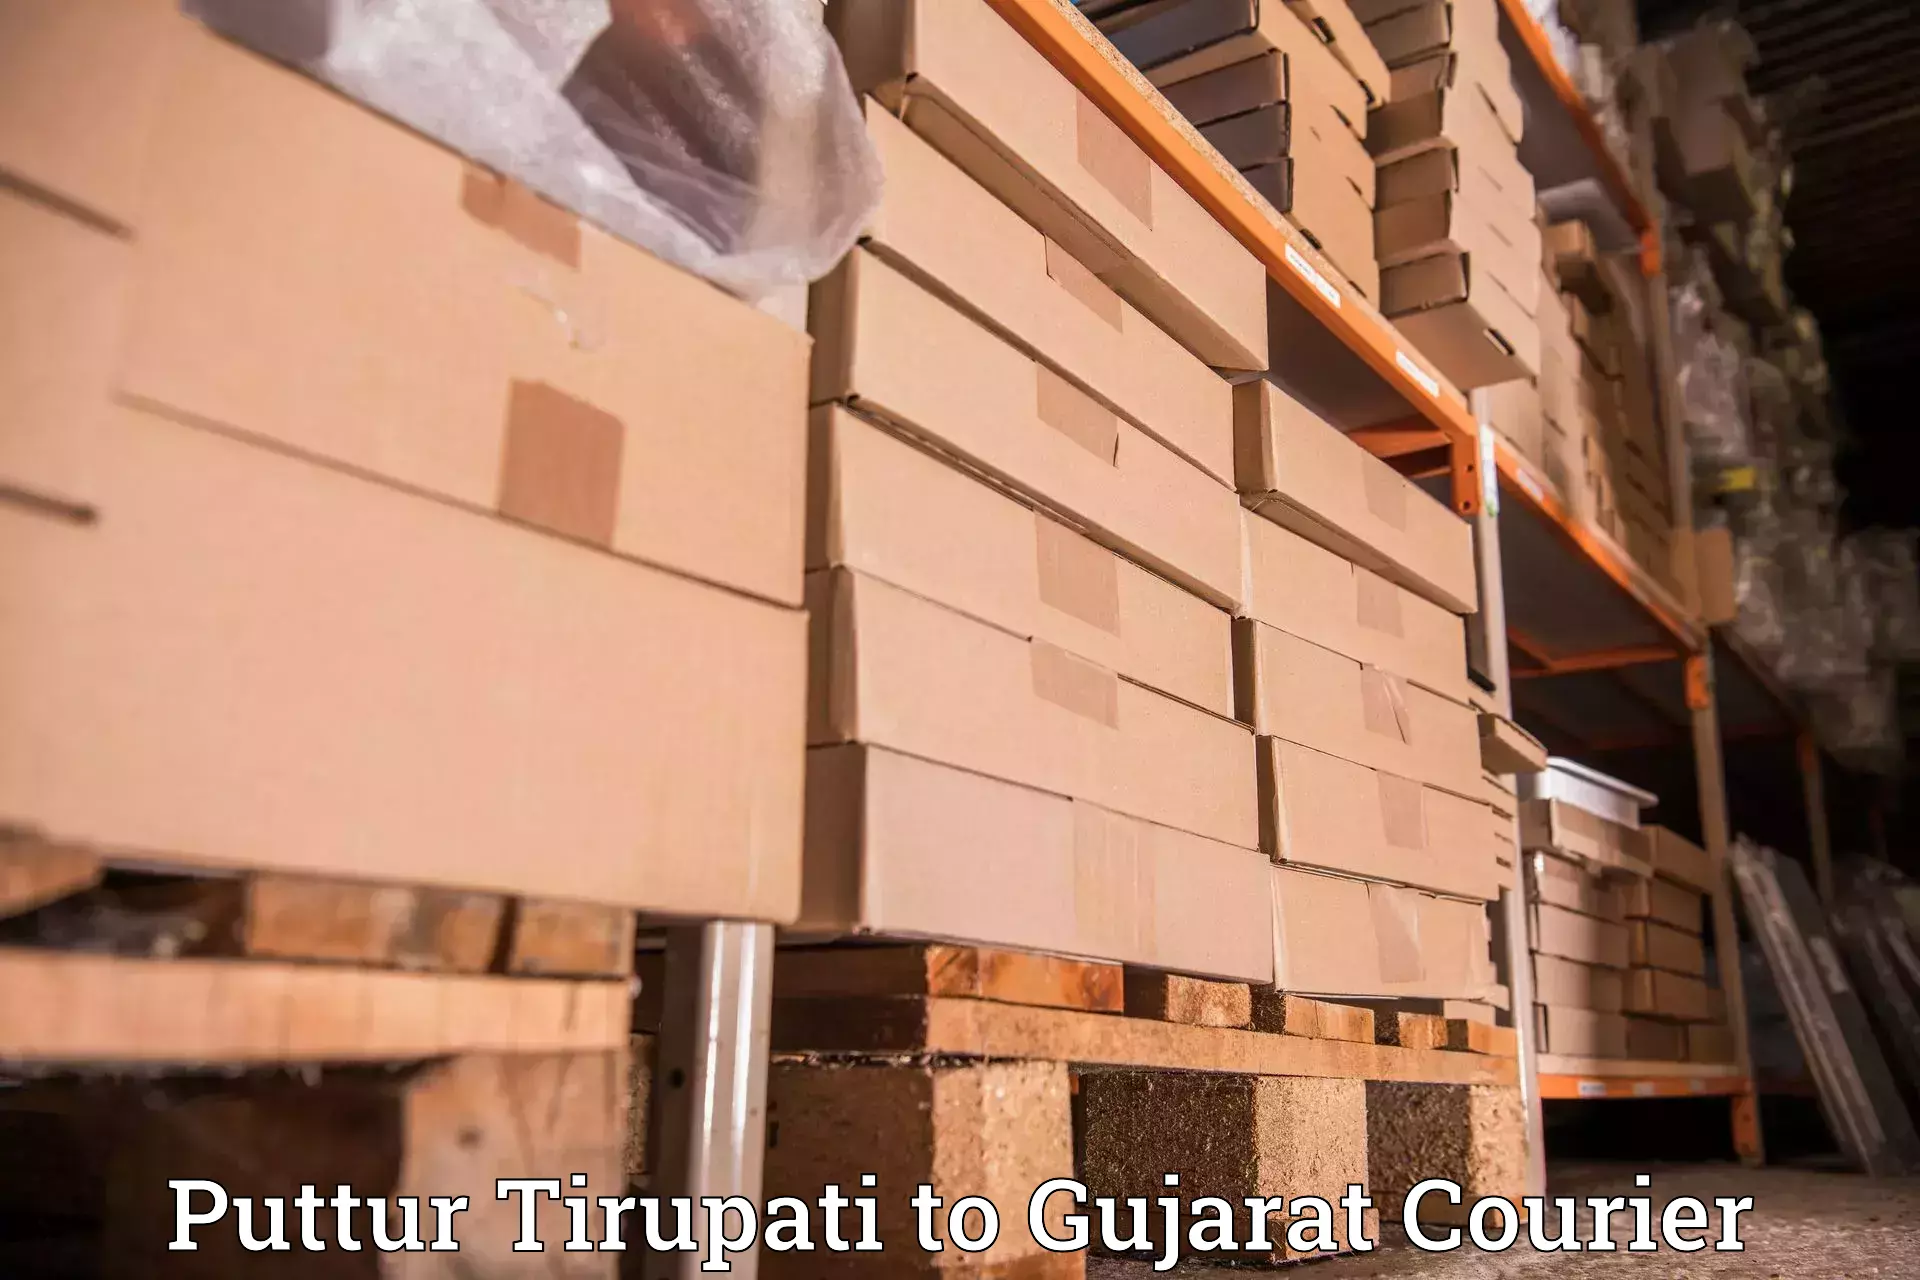 Global logistics network Puttur Tirupati to Bhuj